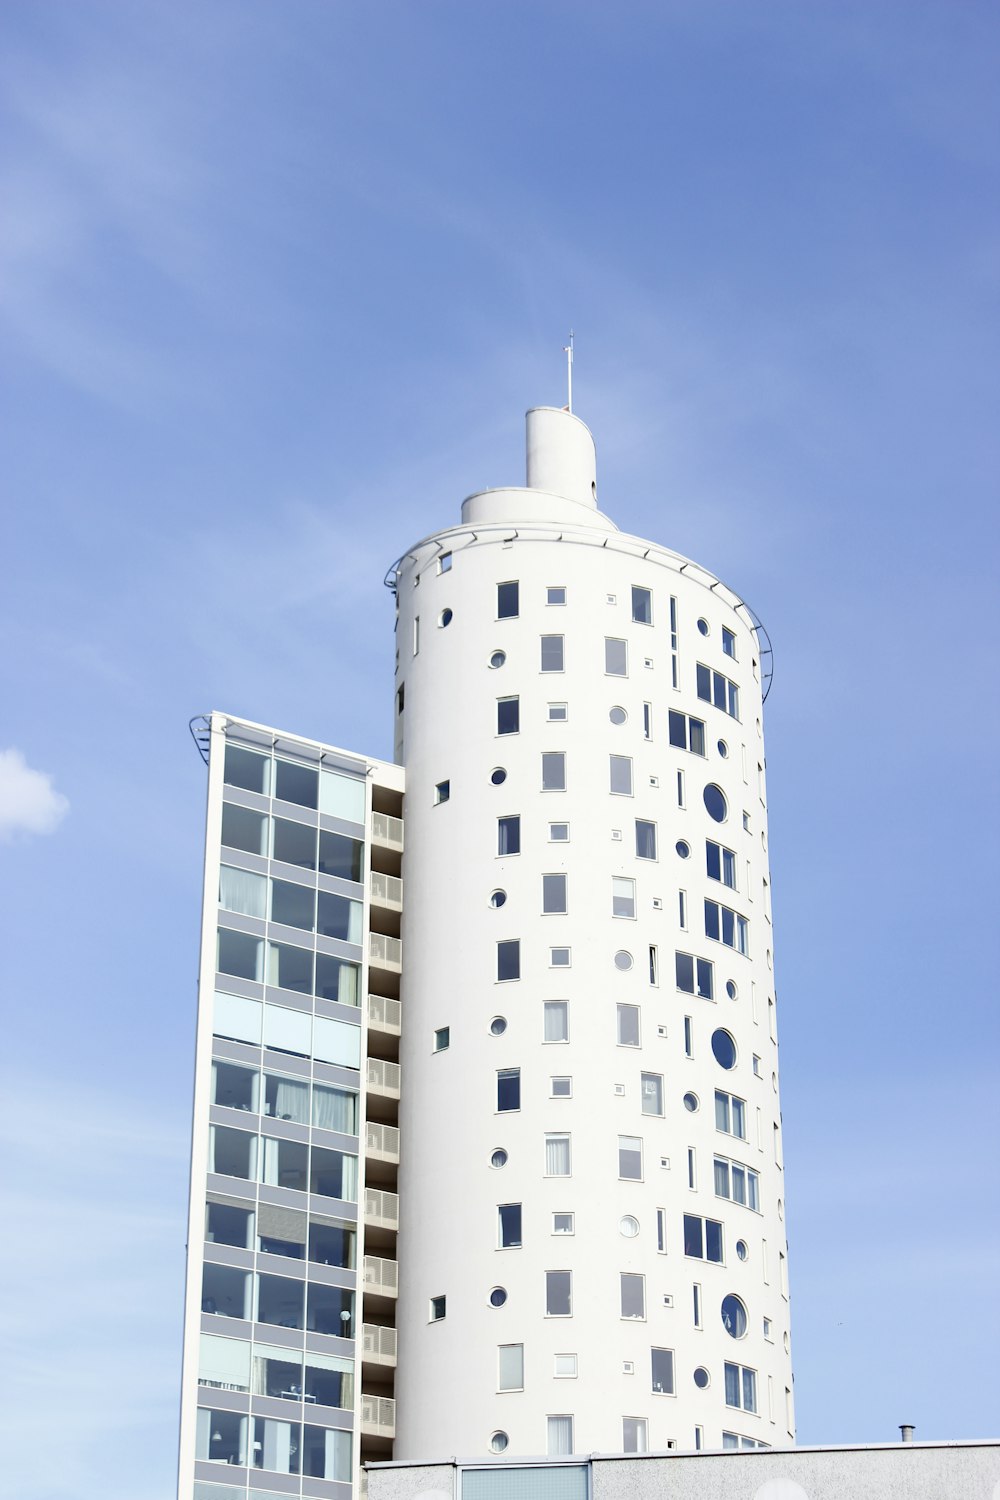 Costruzione della torre bianca sotto il cielo blu e bianco durante il giorno